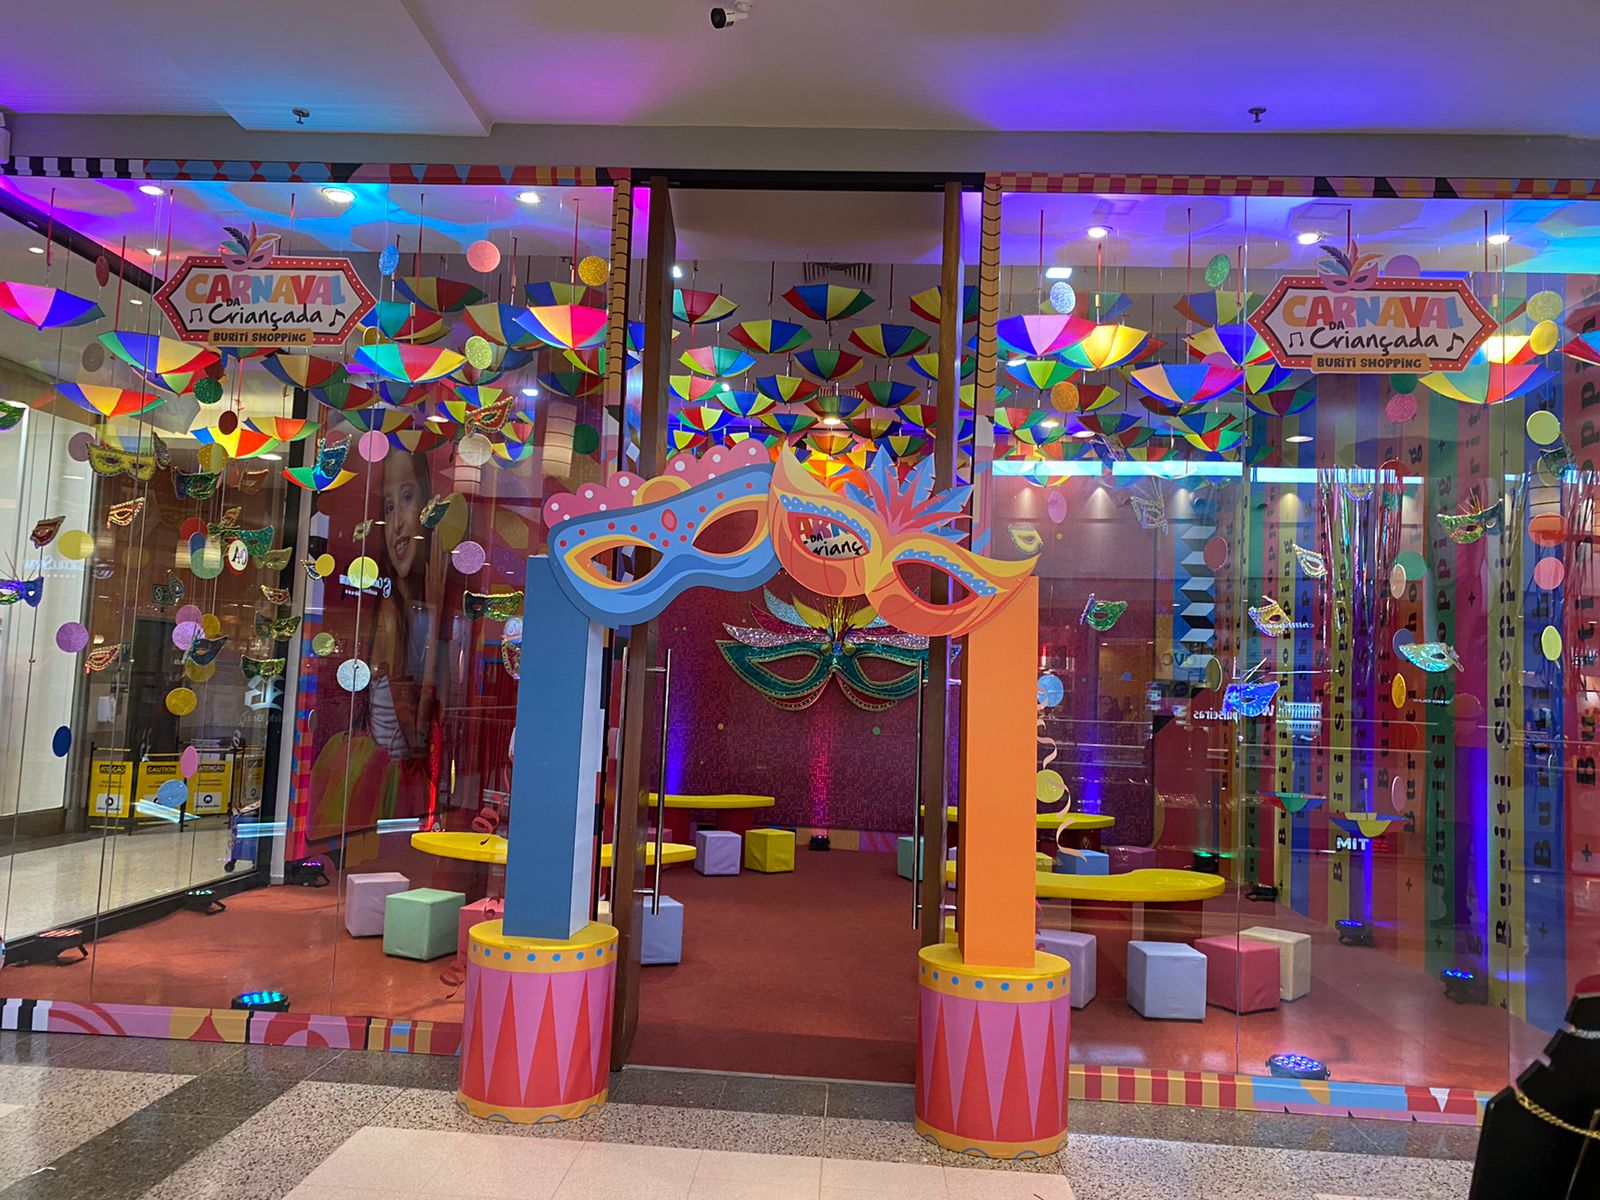 Oficinas infantis gratuitas de Carnaval no Buriti Shopping